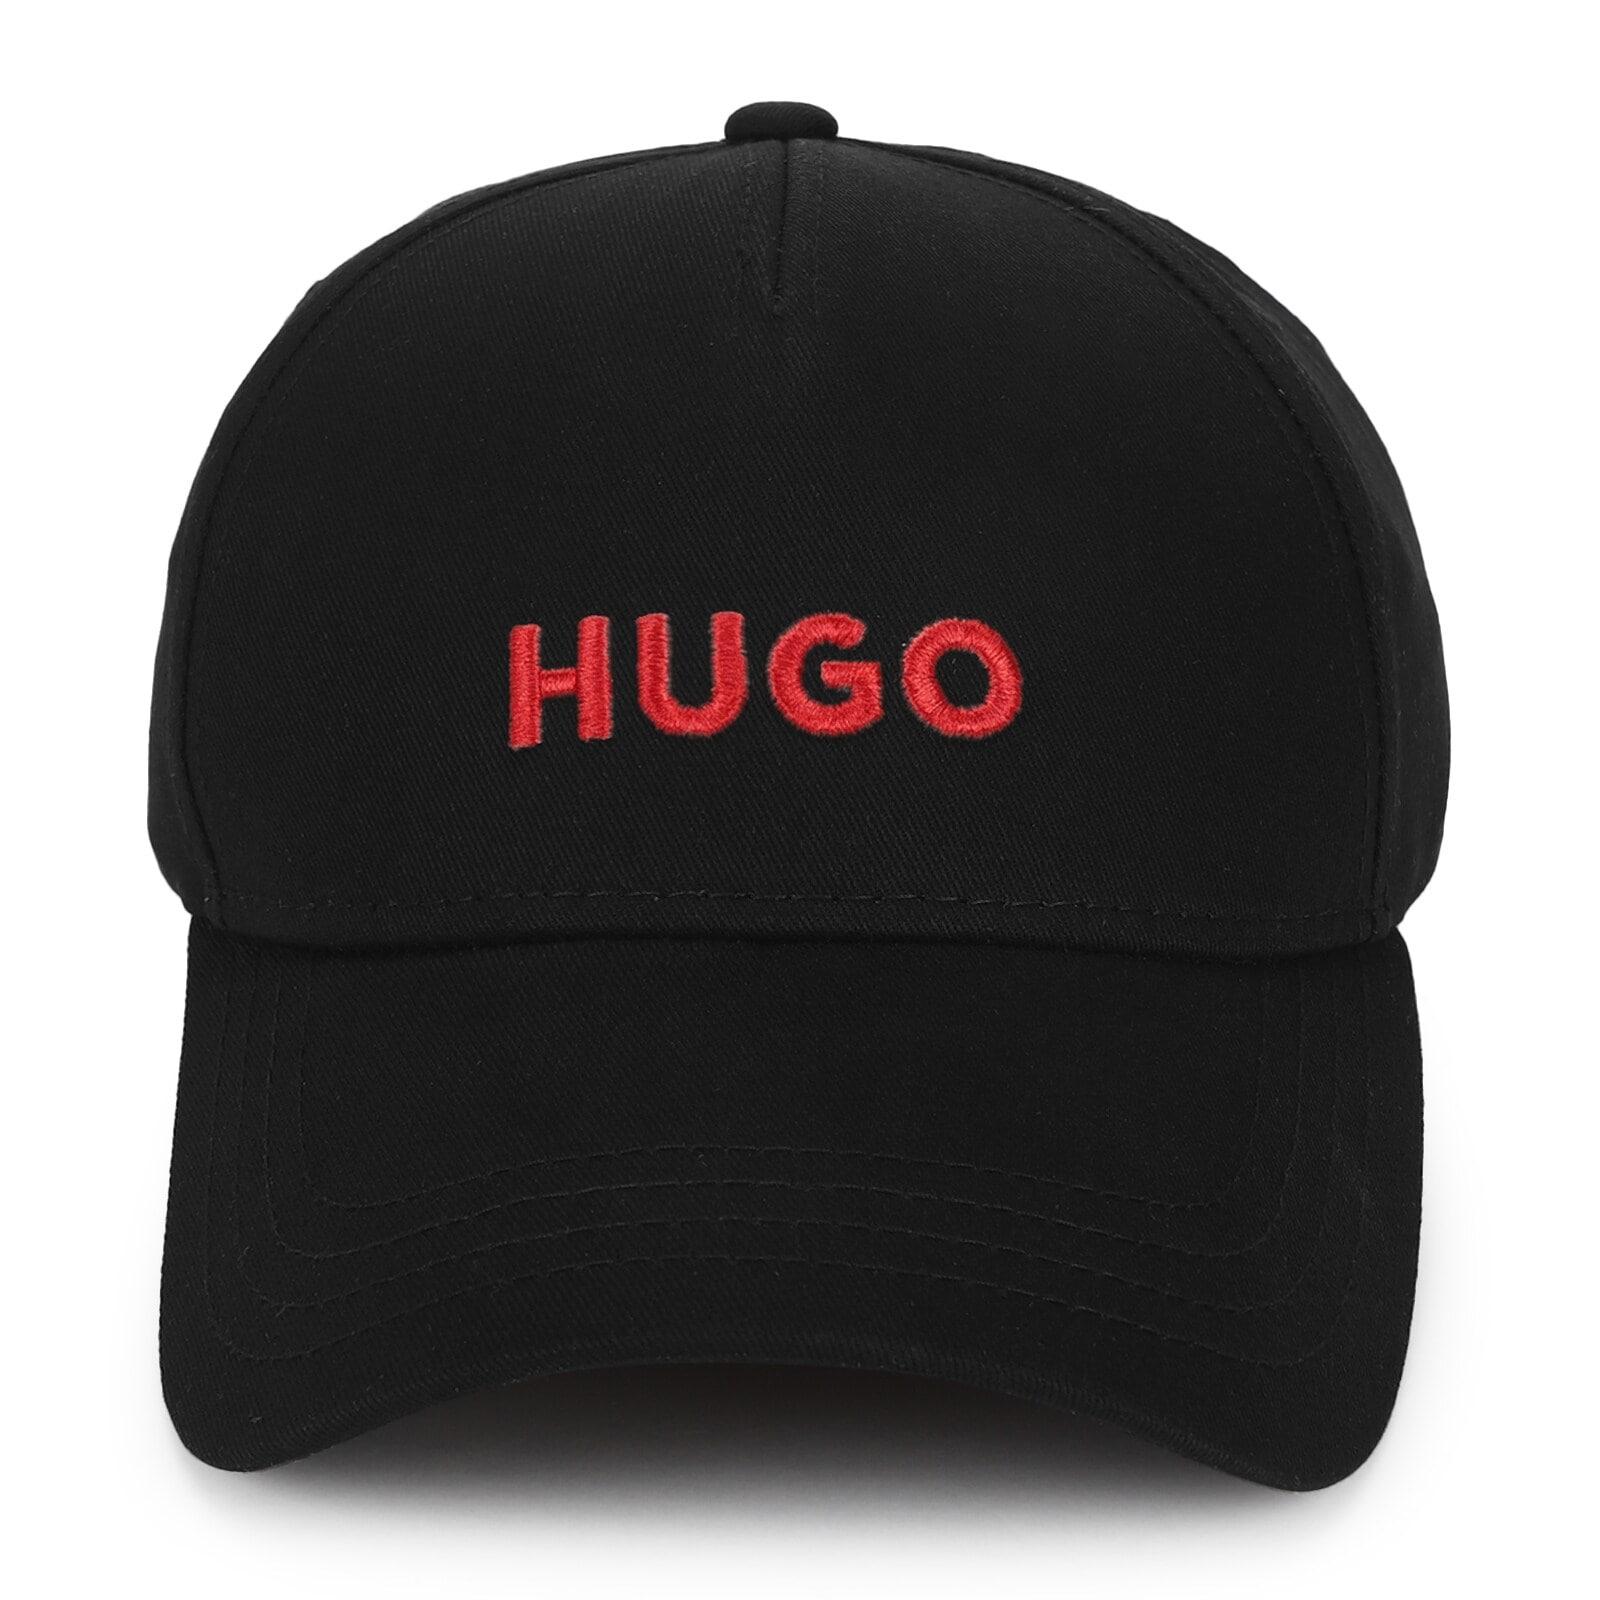 men black cap with red hugo branding